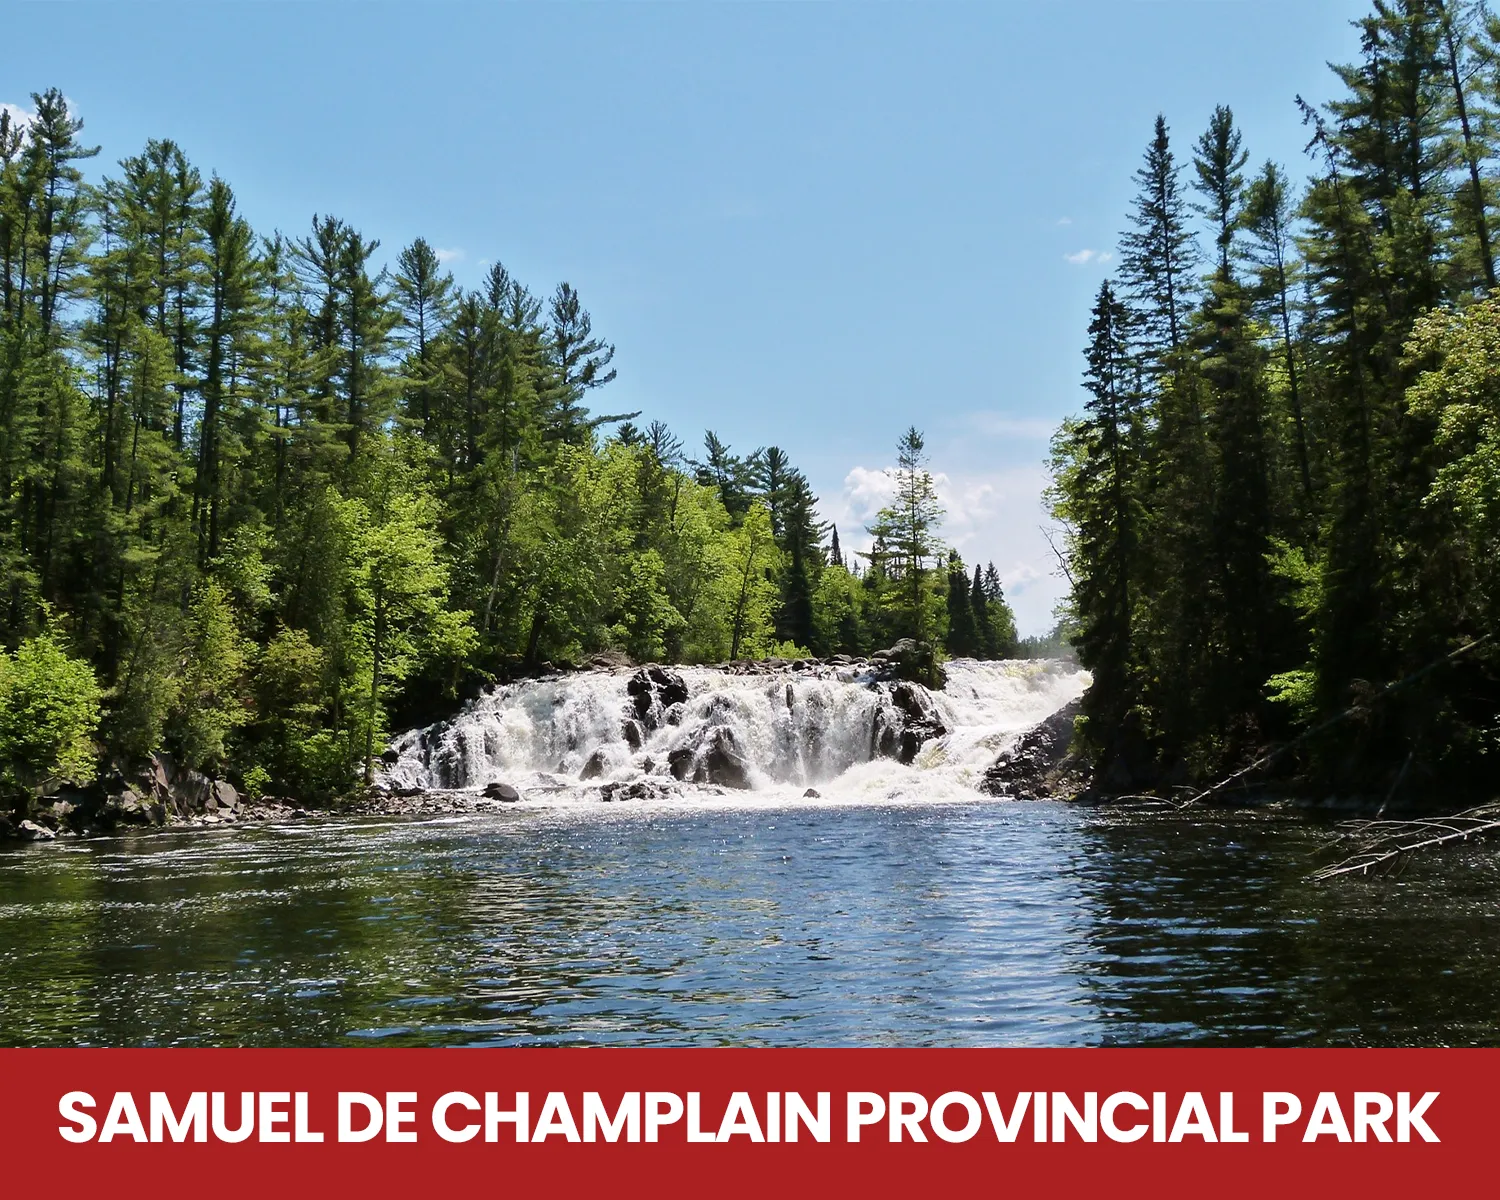 Samuel de Champlain Provincial Park